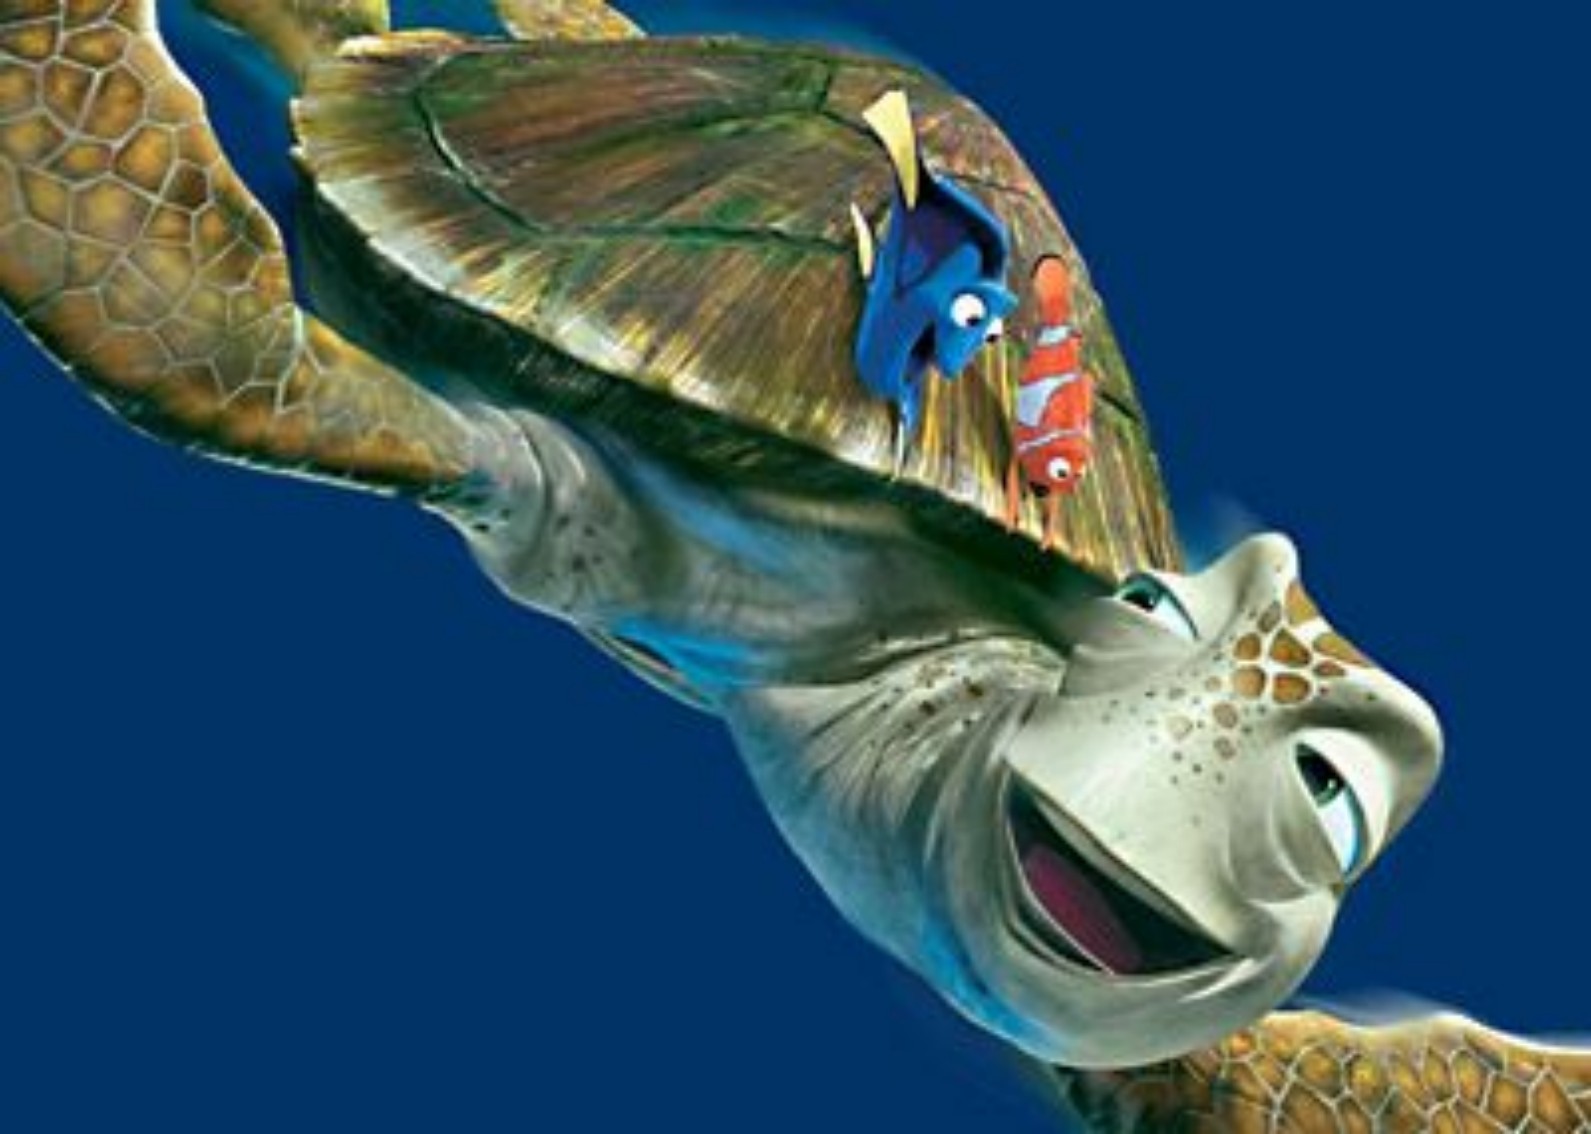 Imágenes Buscando a Nemo - la tortuga estrellada